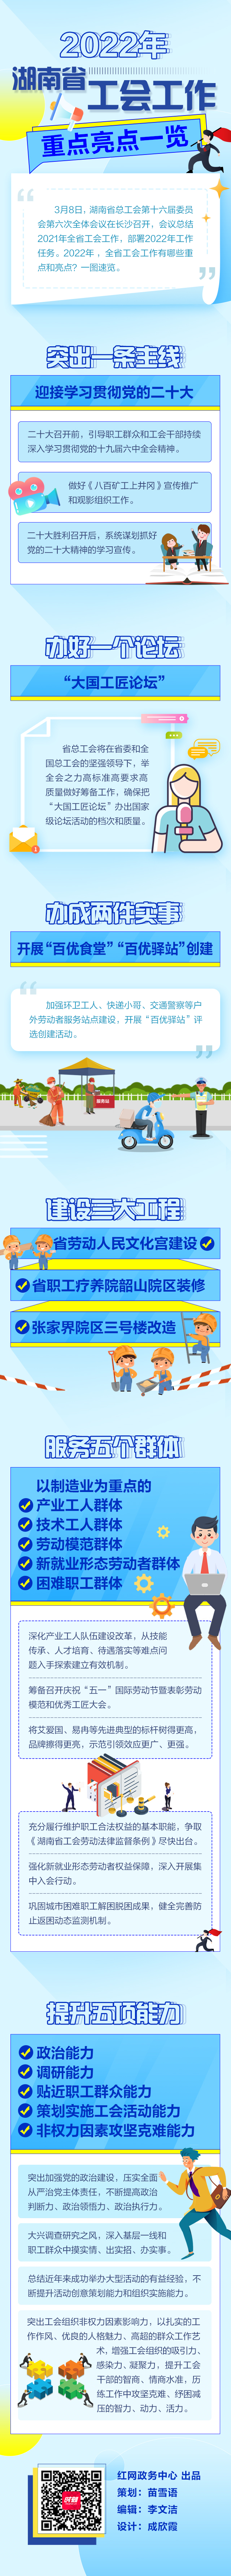 2022年湖南省工会工作重点亮点一览(1).jpg